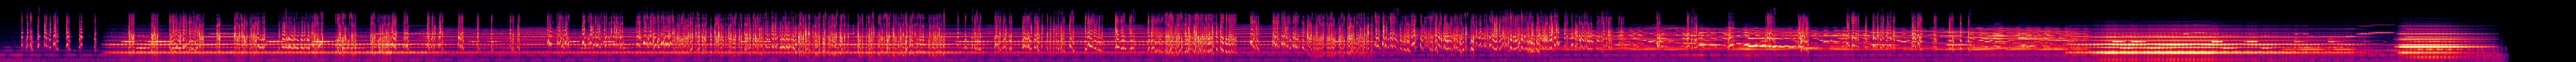 The Afterlife - 4 - Spectrogram.jpg